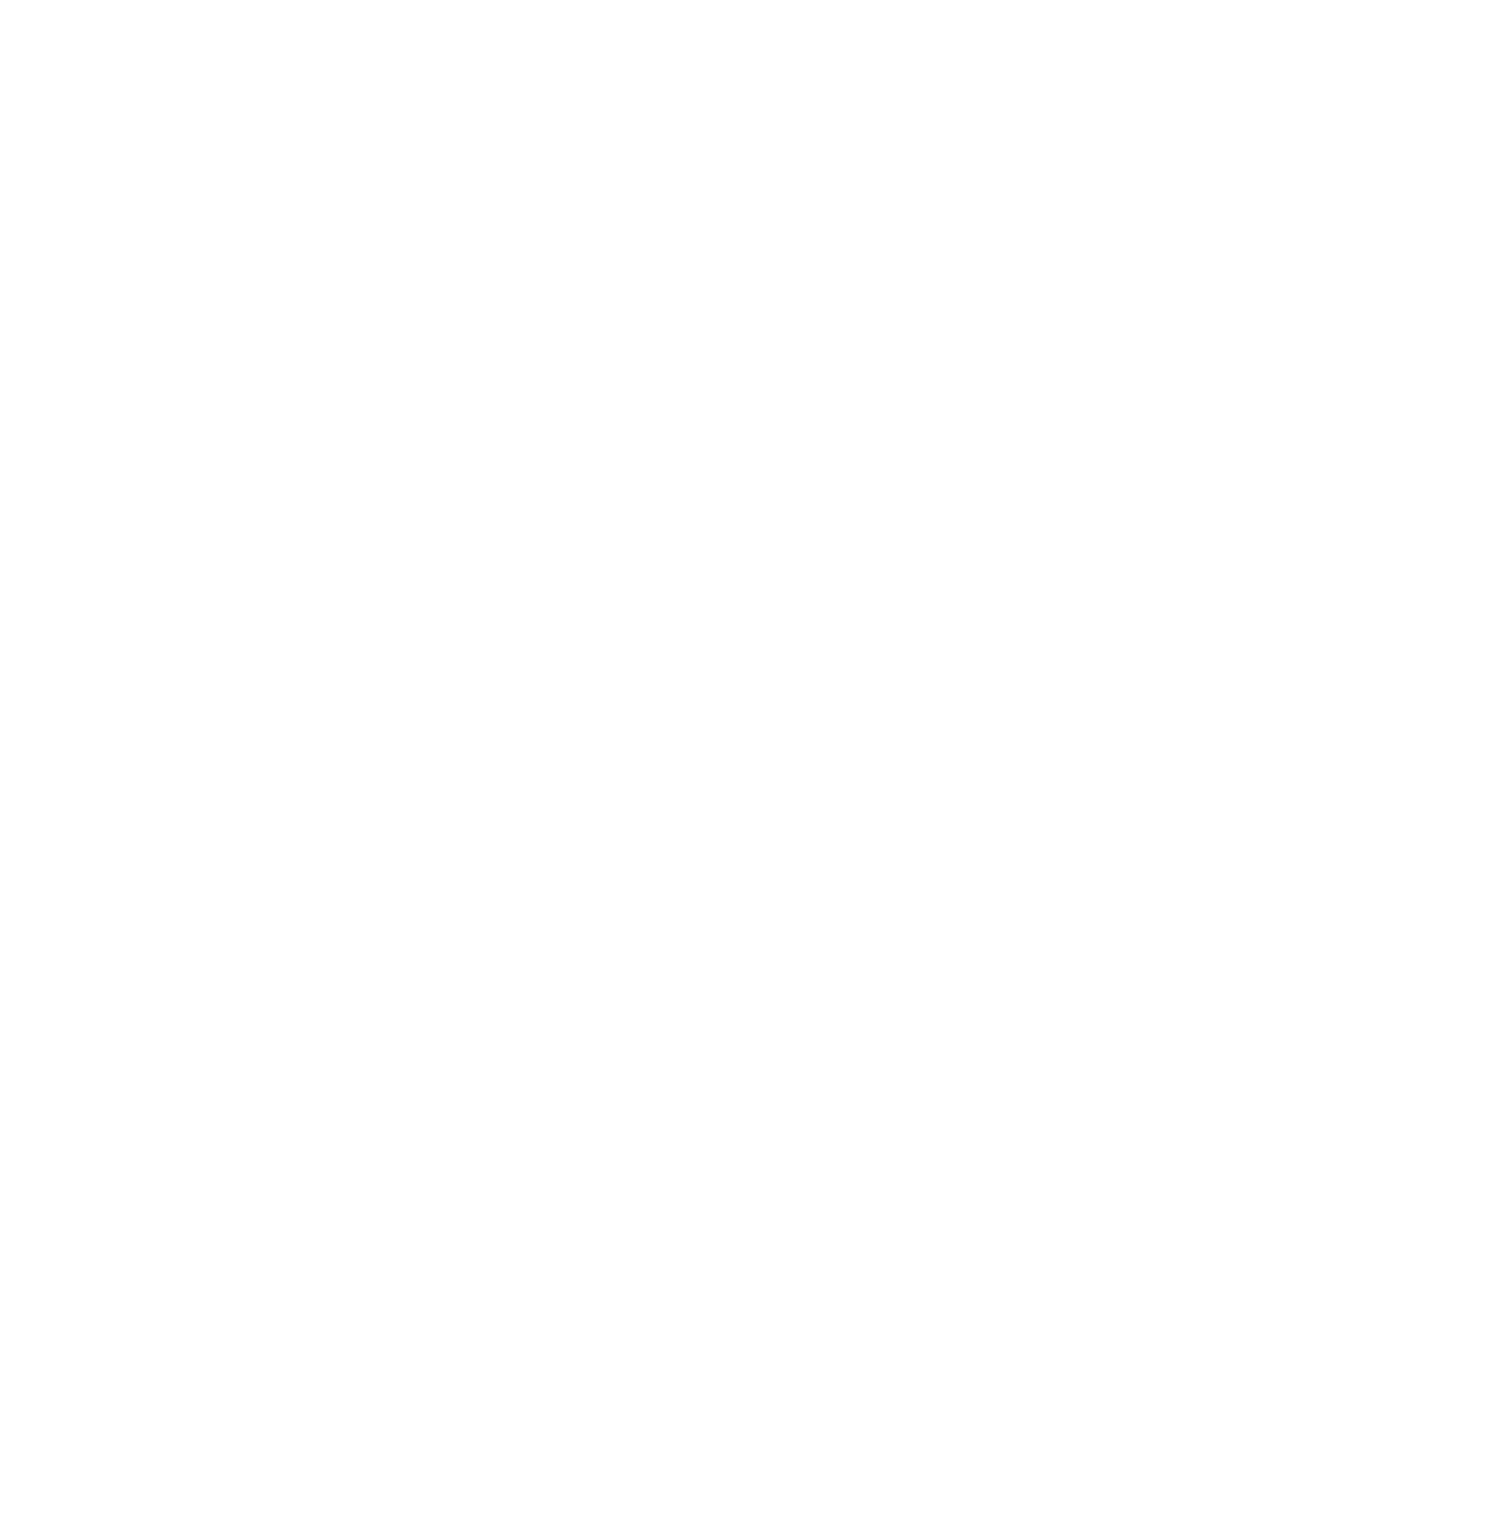 Chunghwa Telecom logo pour fonds sombres (PNG transparent)